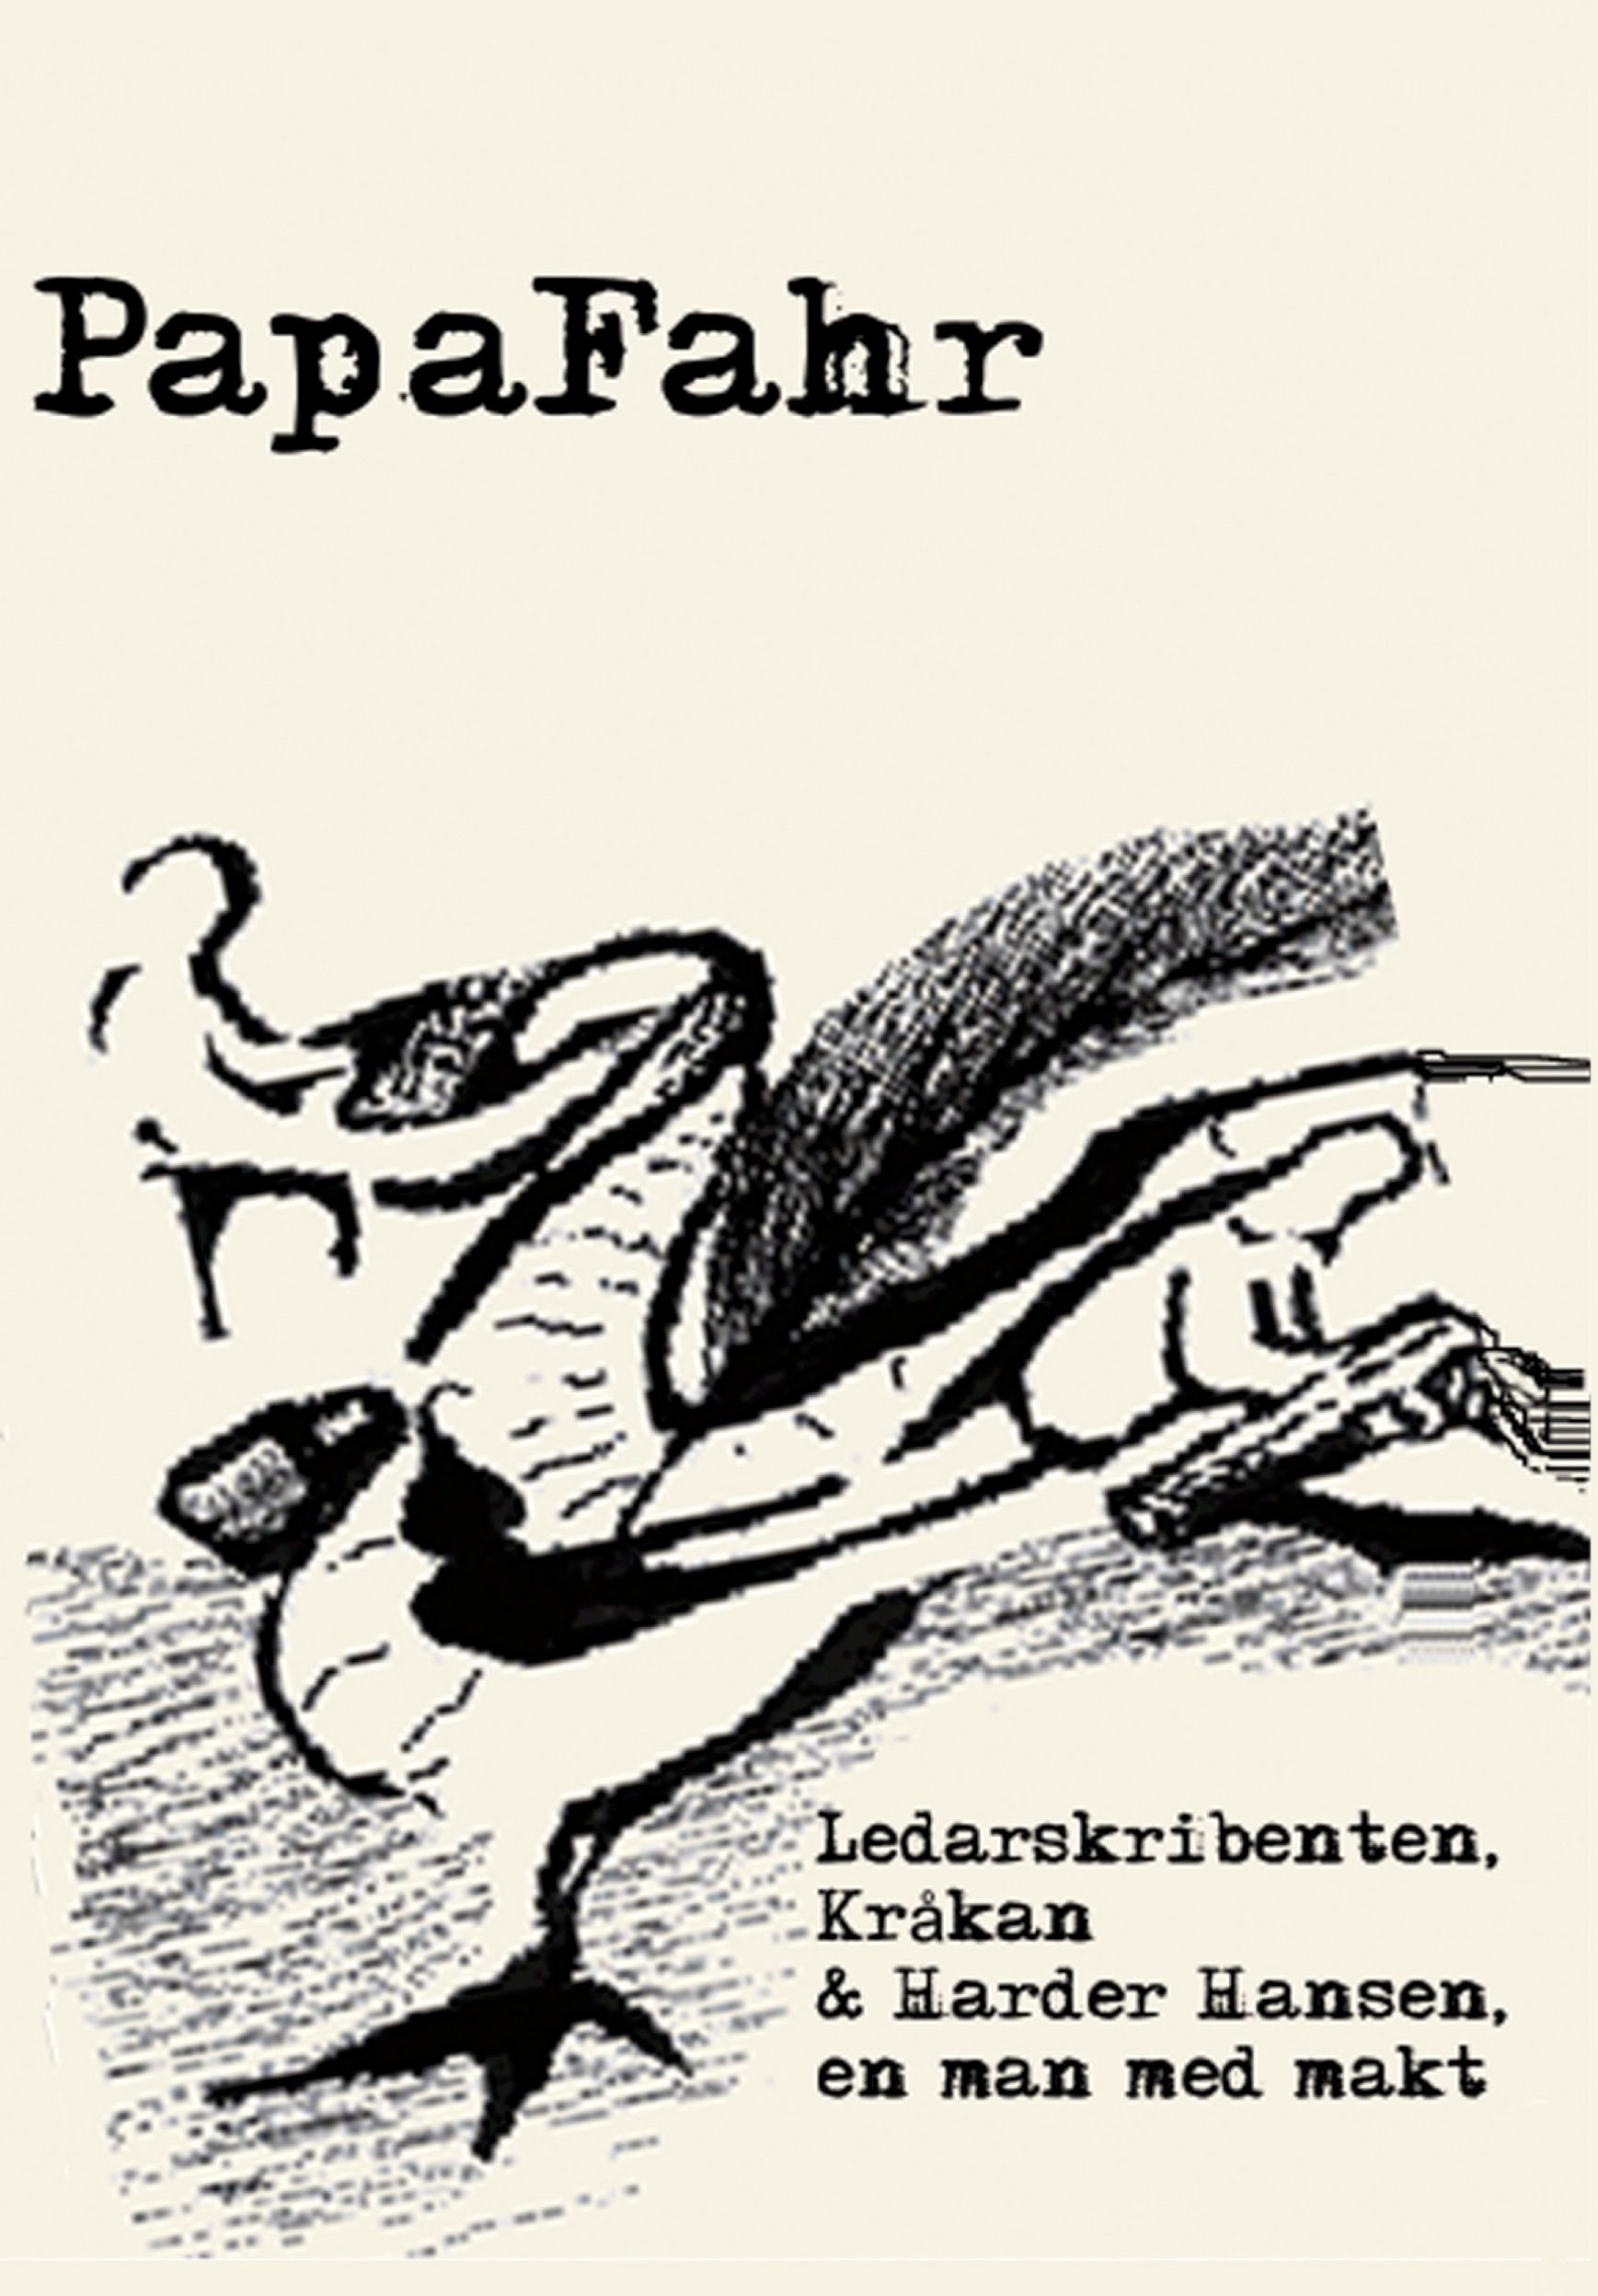 Ledarskribenten, Kråkan & Harder Hansen - en man med makt , e-bok av PapaFahr